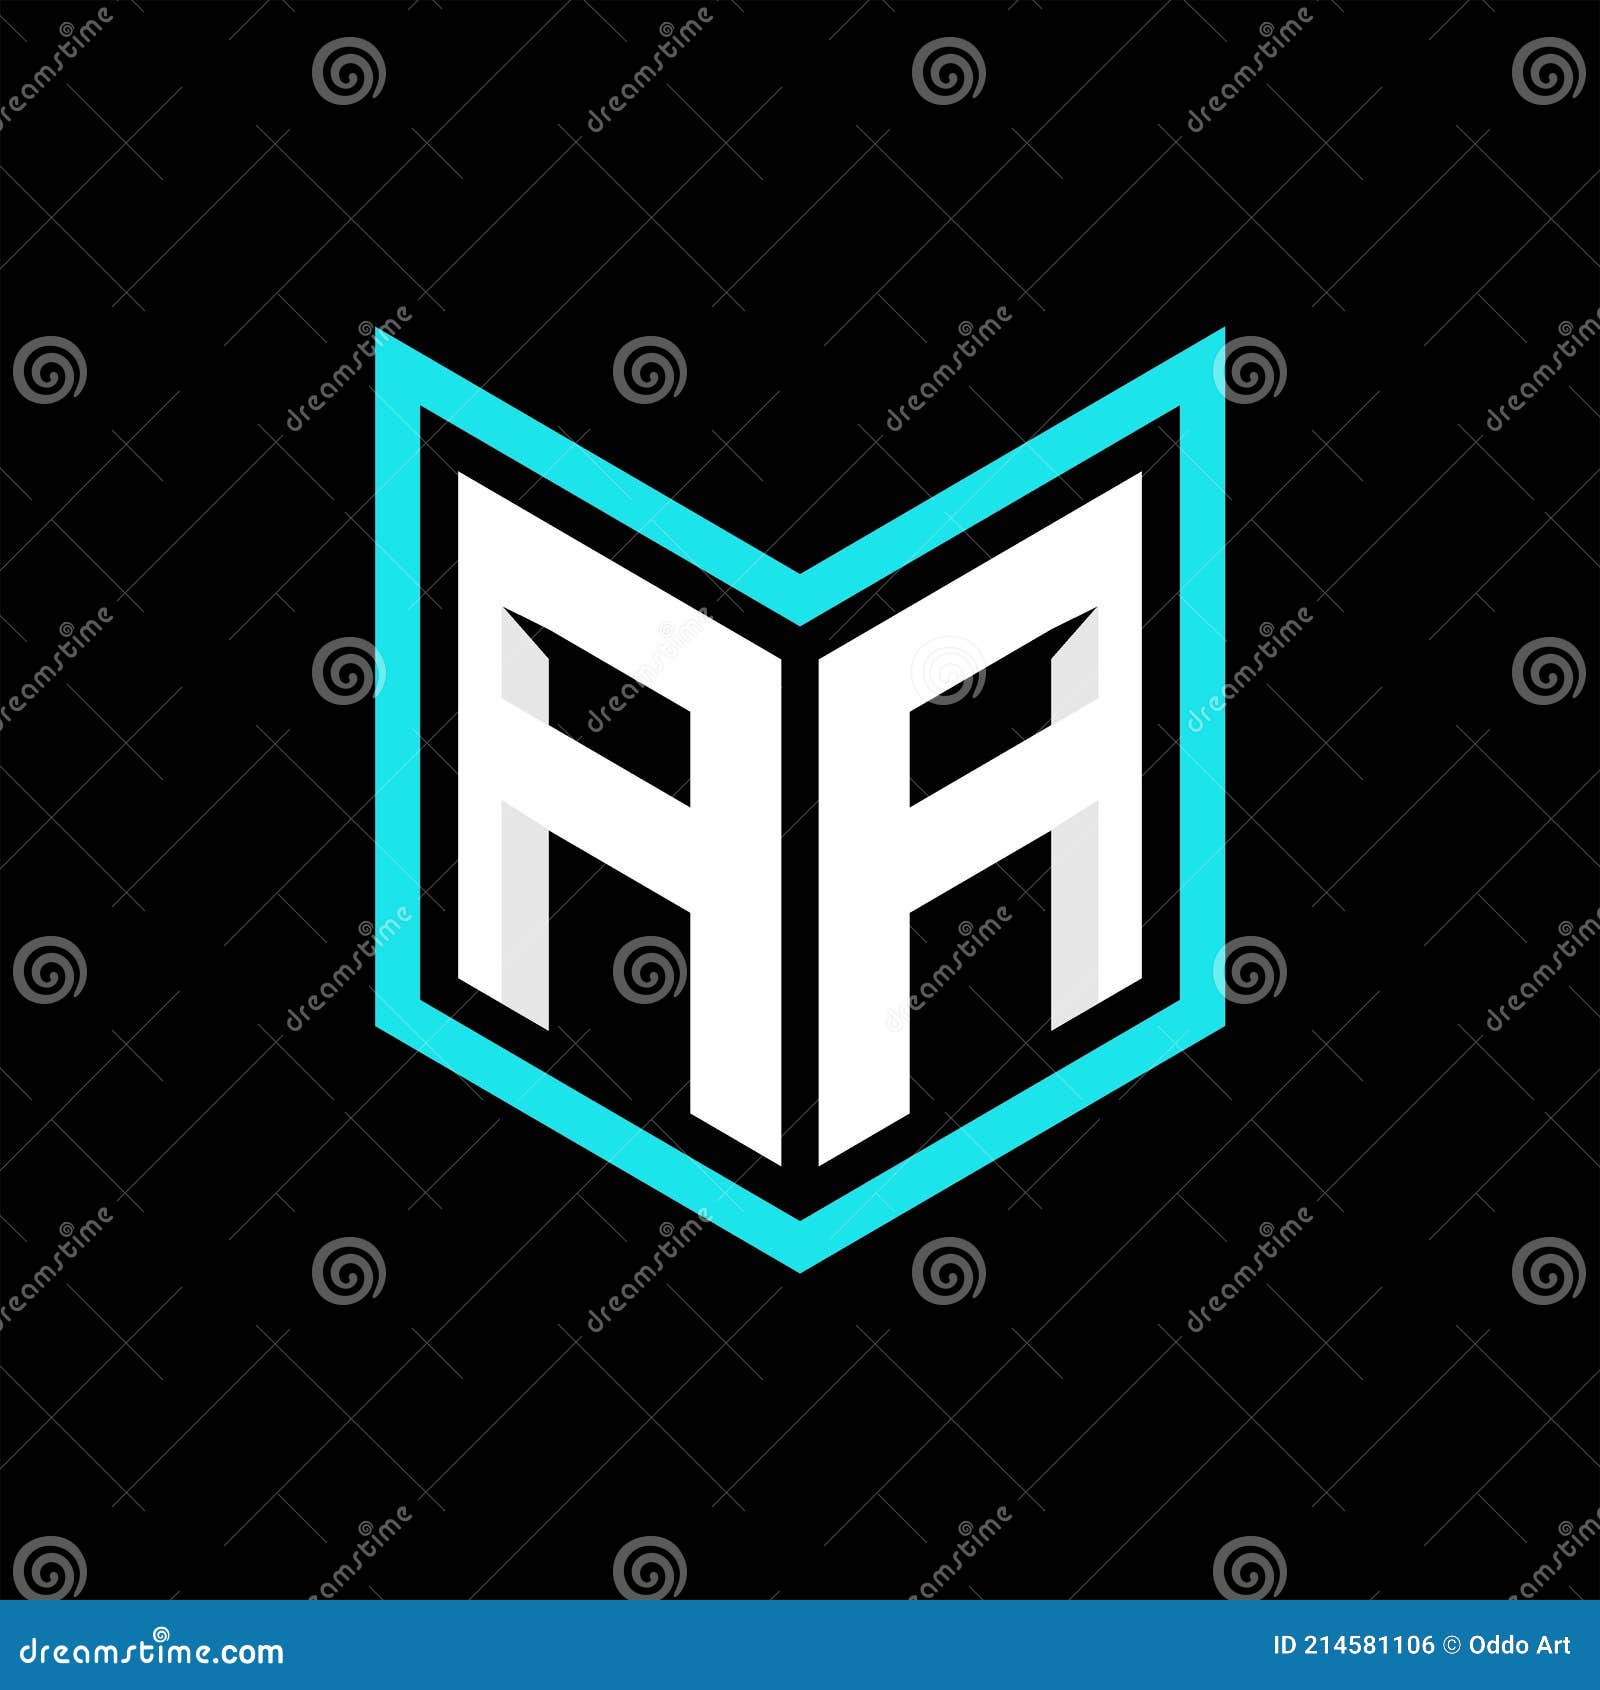 Aa monogram logo Royalty Free Vector Image - VectorStock